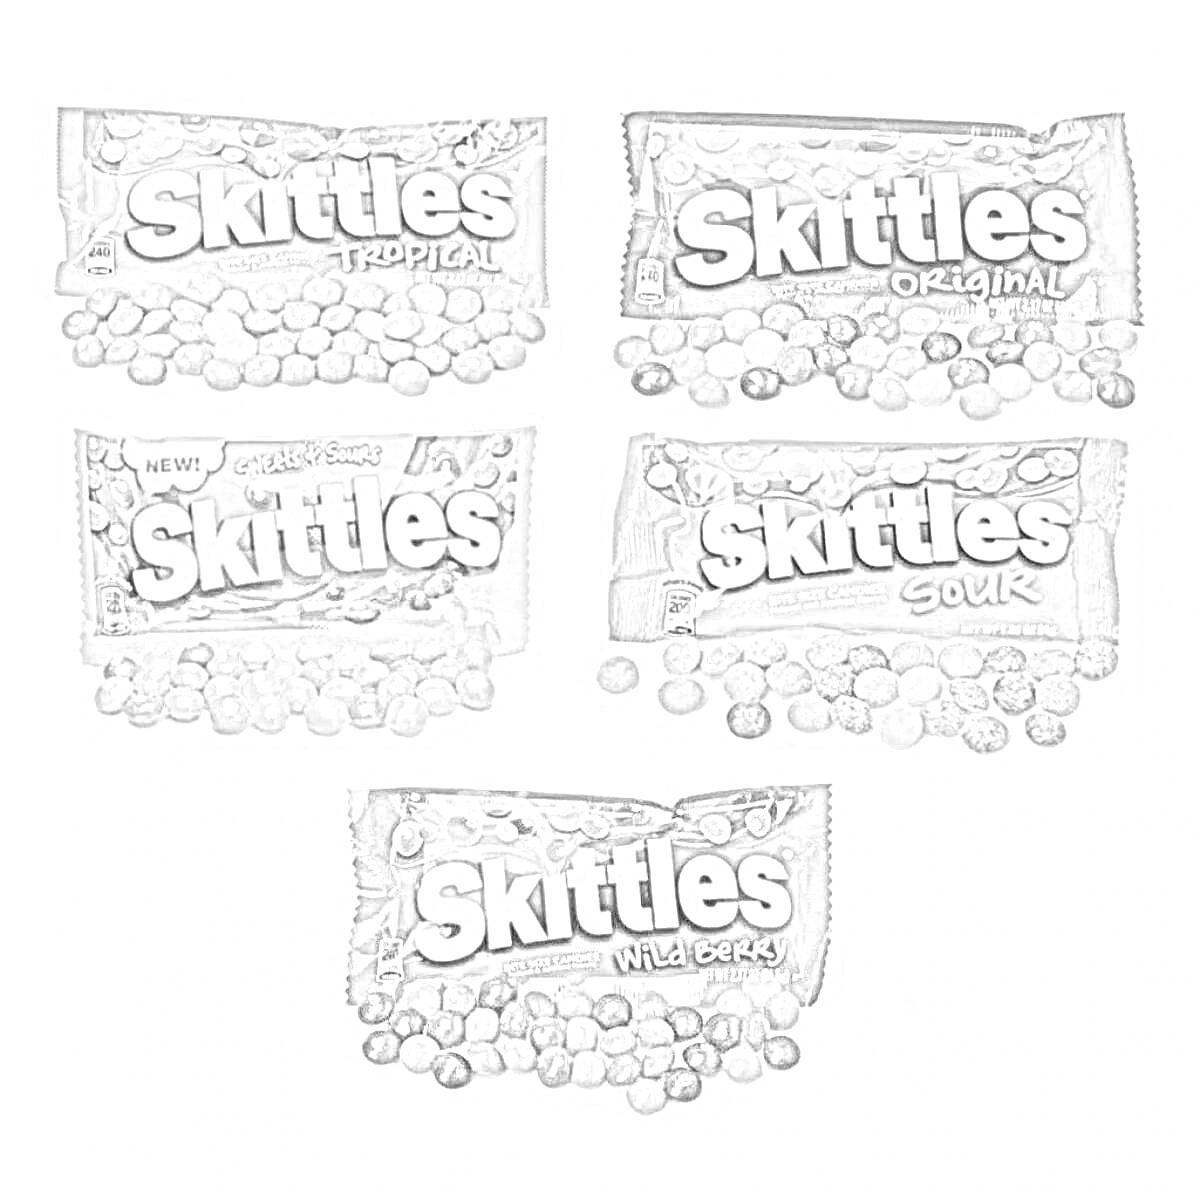 Разнообразие вкусов Skittles: Tropical, Original, Smoothies, Sour и Wild Berry, изображение упаковок с конфетами